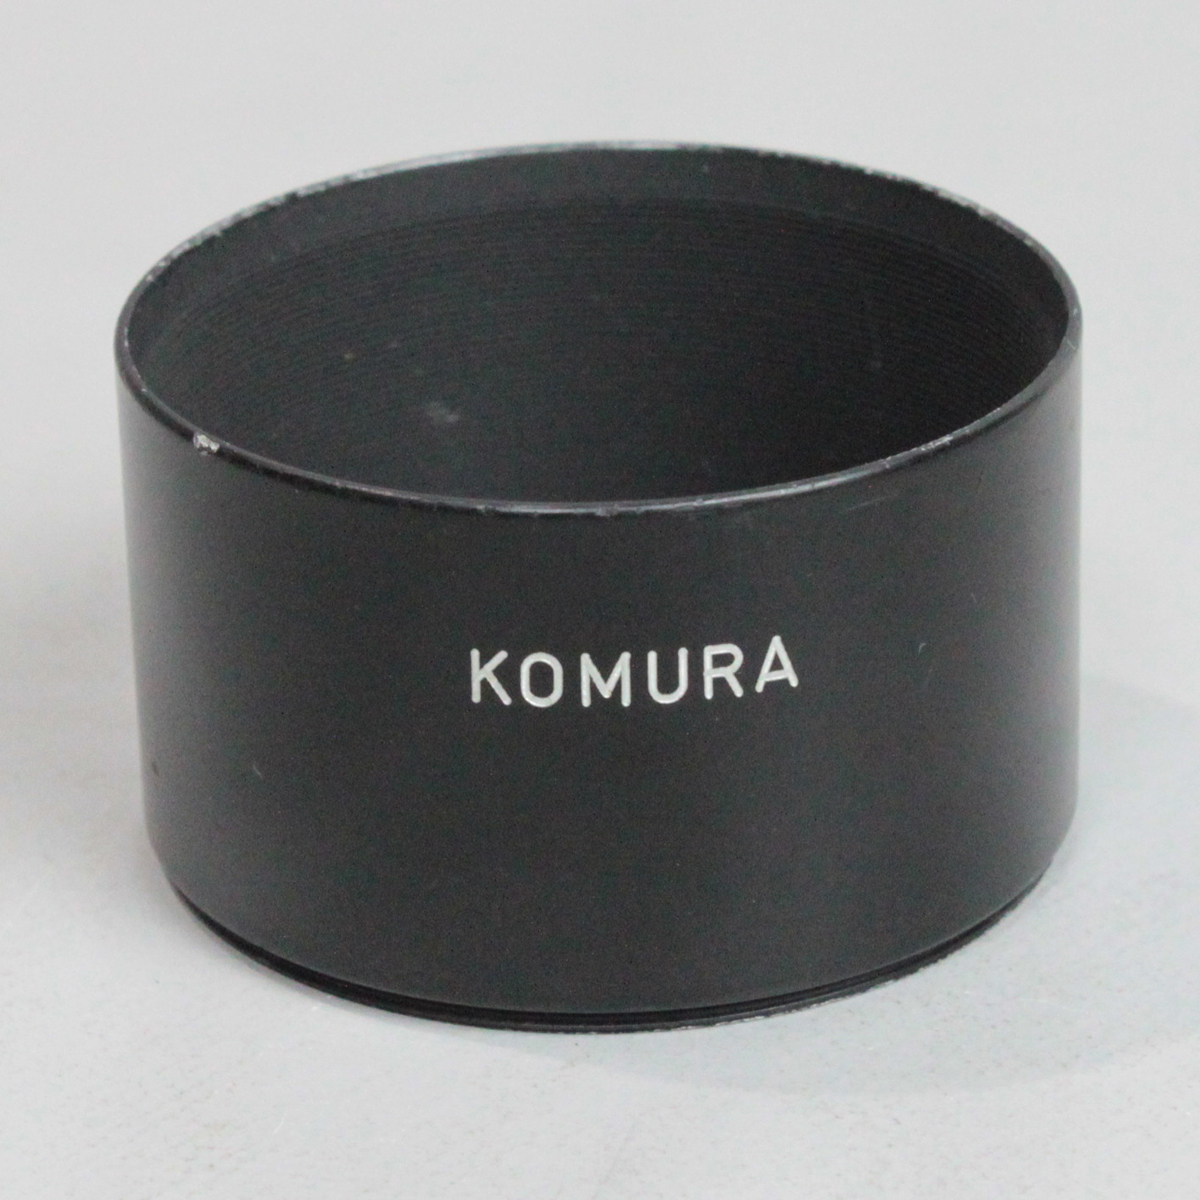 081738 【良品 コムラ】 KOMURA 取付口径58mm 中望遠レンズ用 スクリュー式メタルレンズフード_画像1